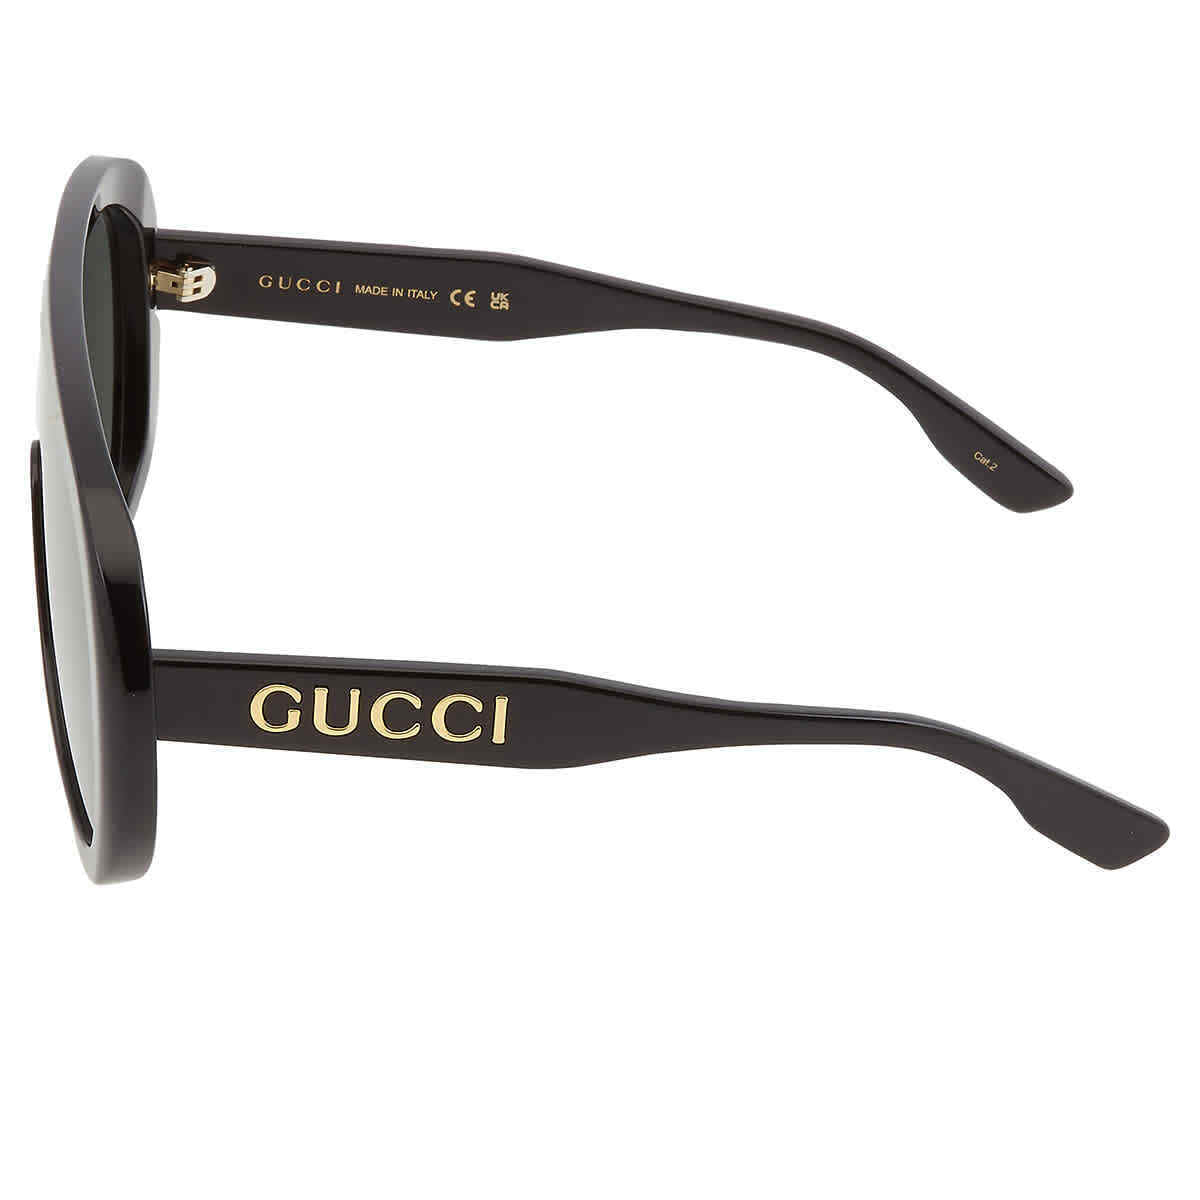 Gucci GG1370S-001-99 99mm New Sunglasses